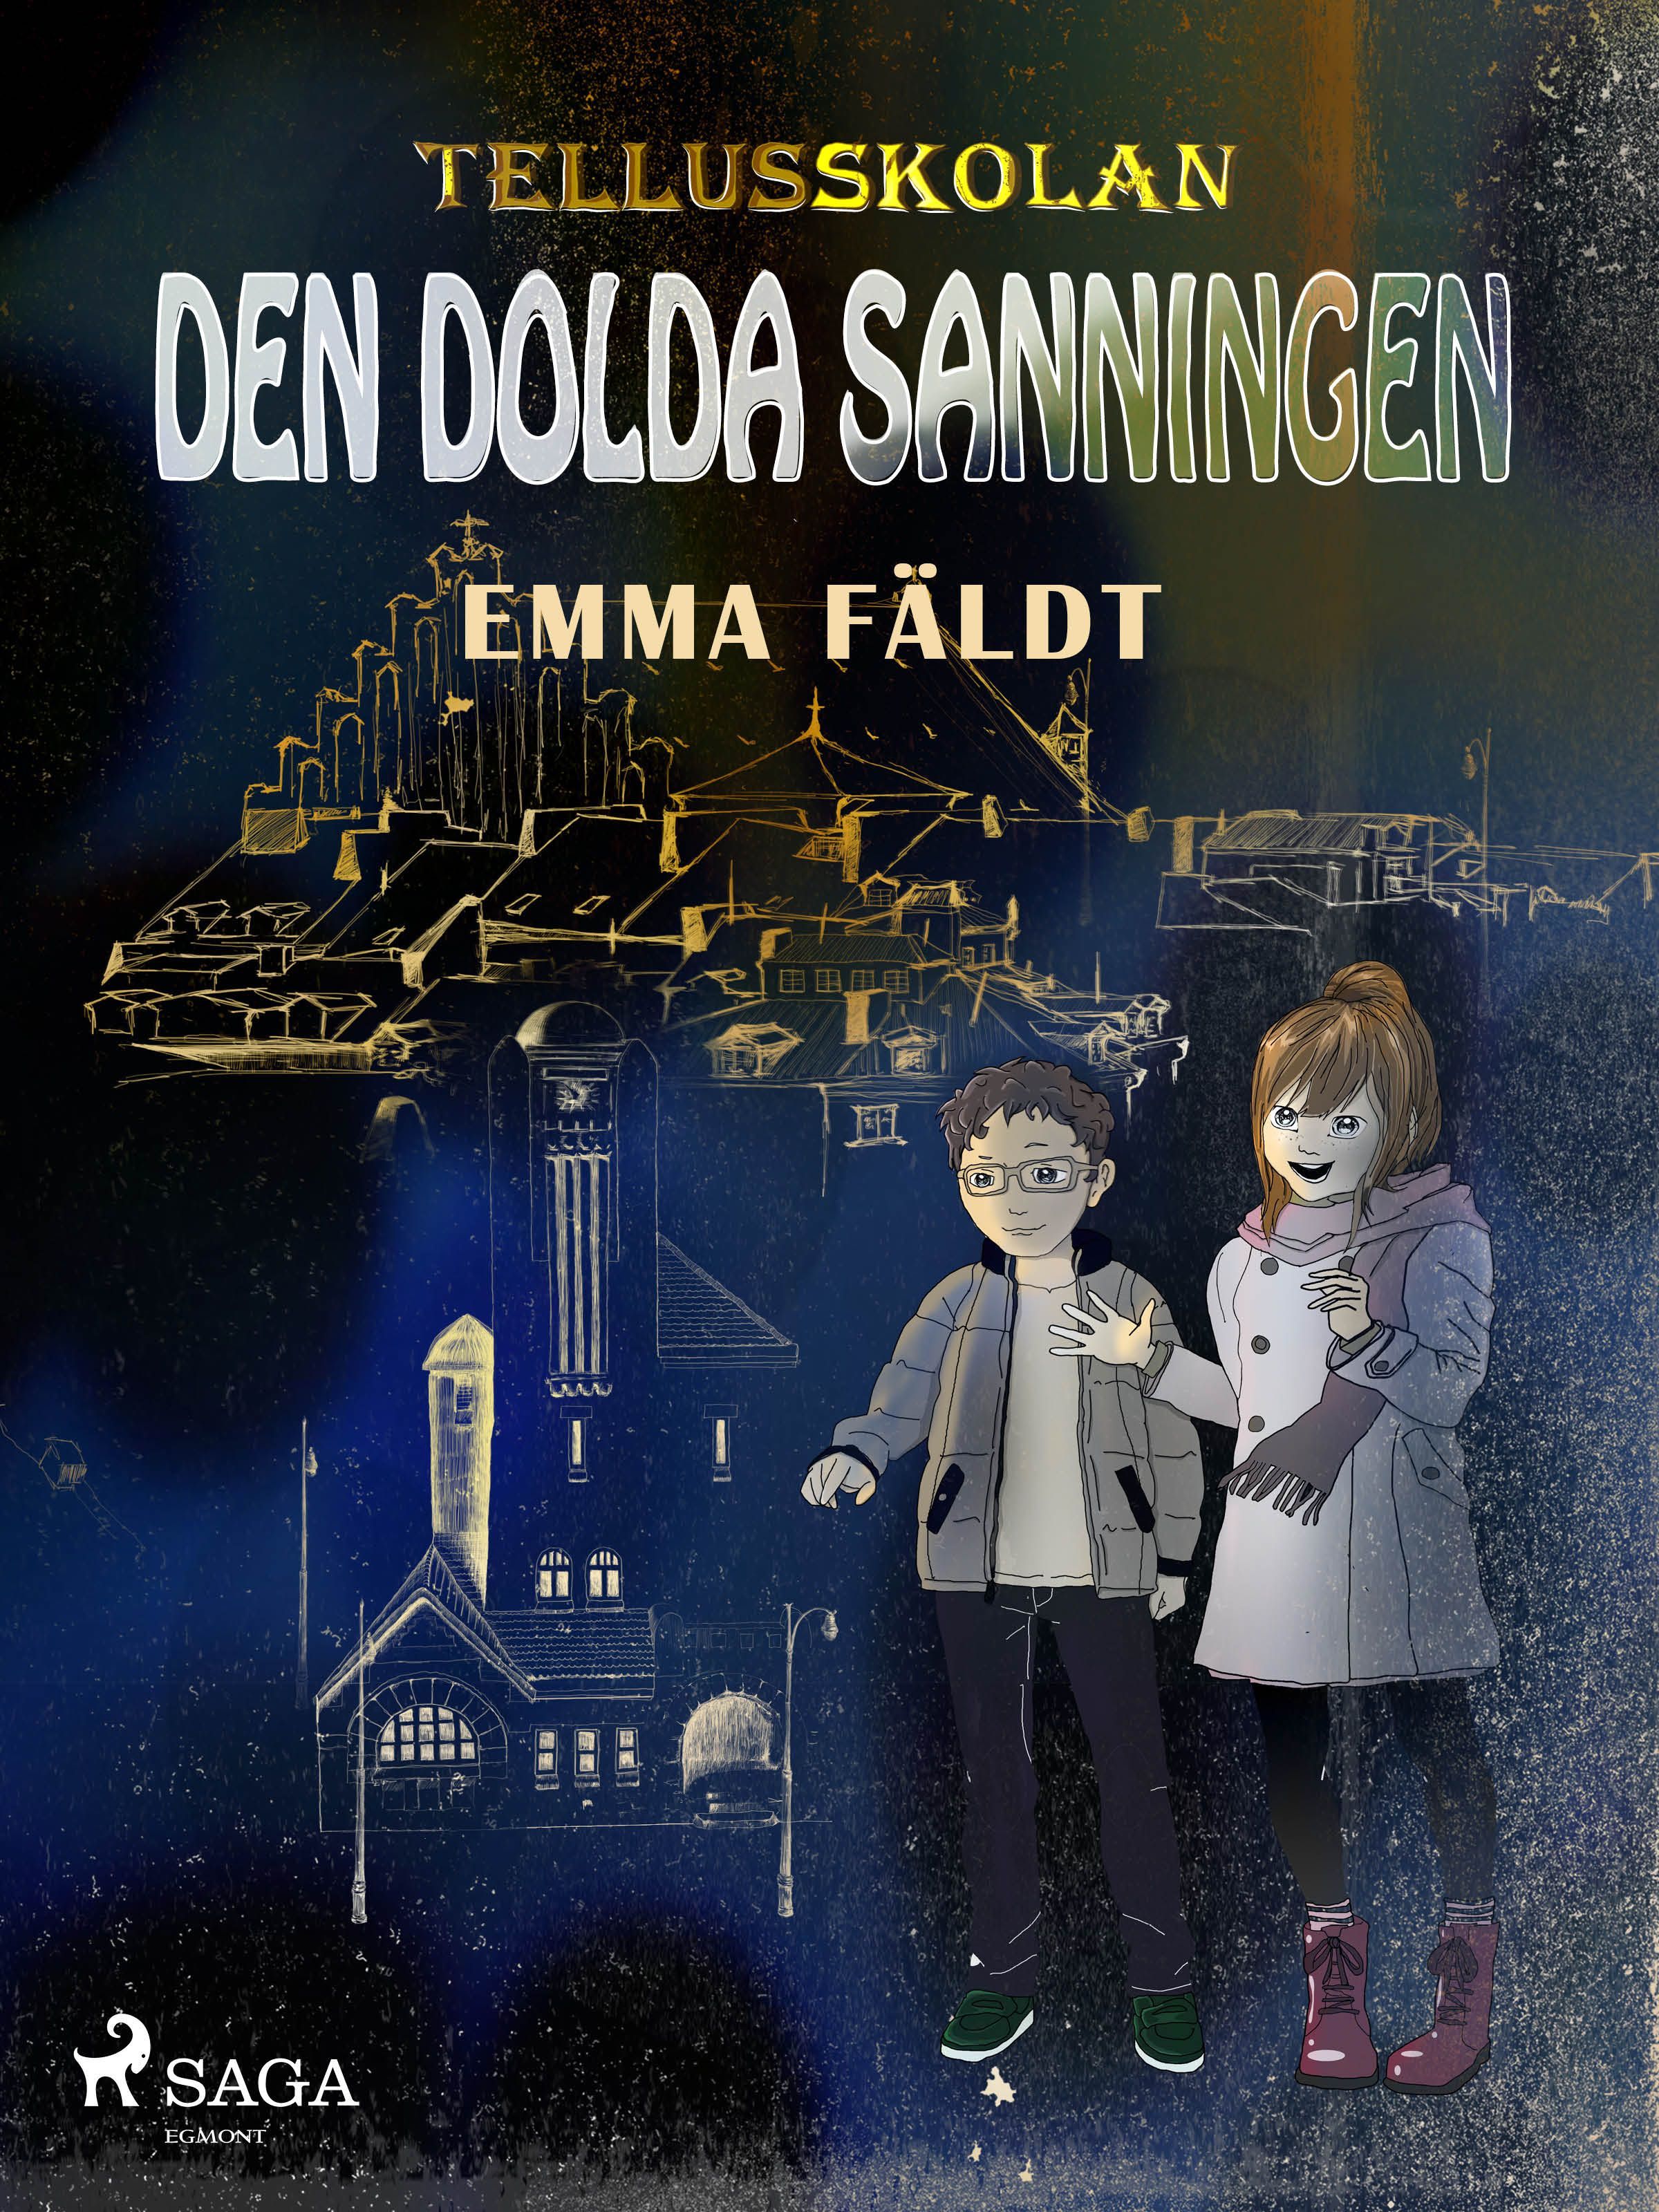 Tellusskolan: den dolda sanningen, e-bog af Emma Fäldt